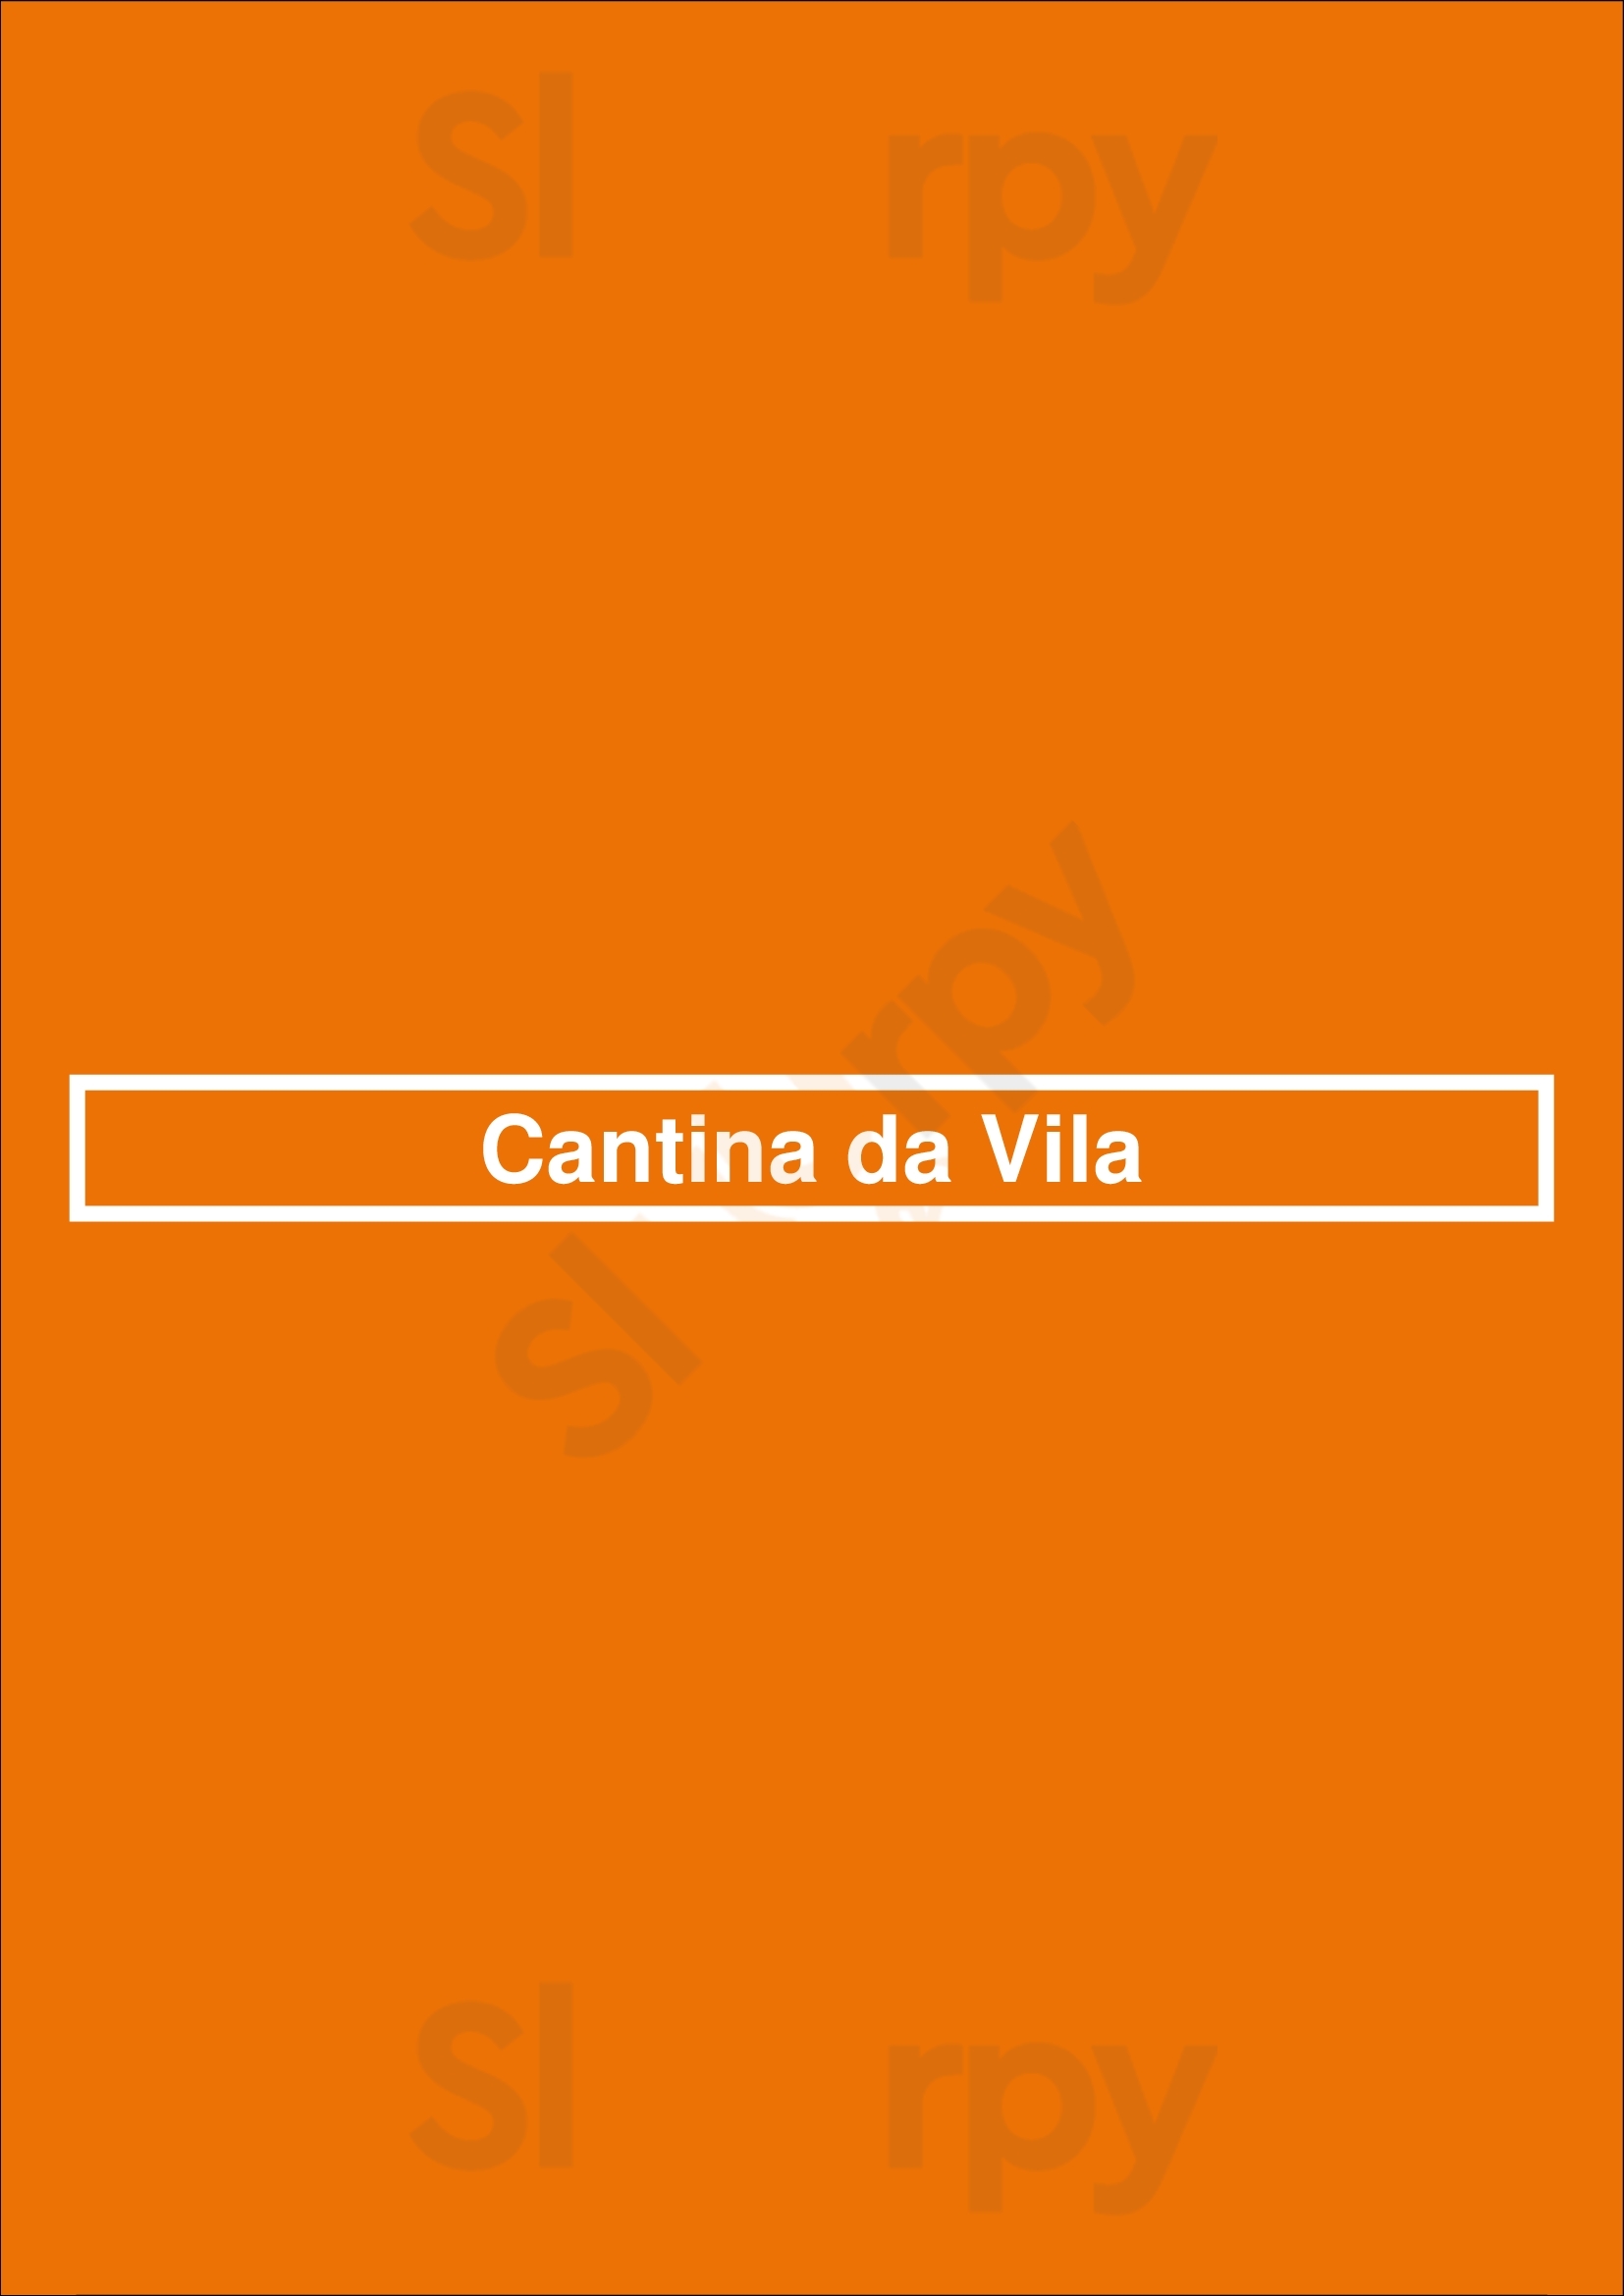 Cantina Da Vila Cascais Menu - 1